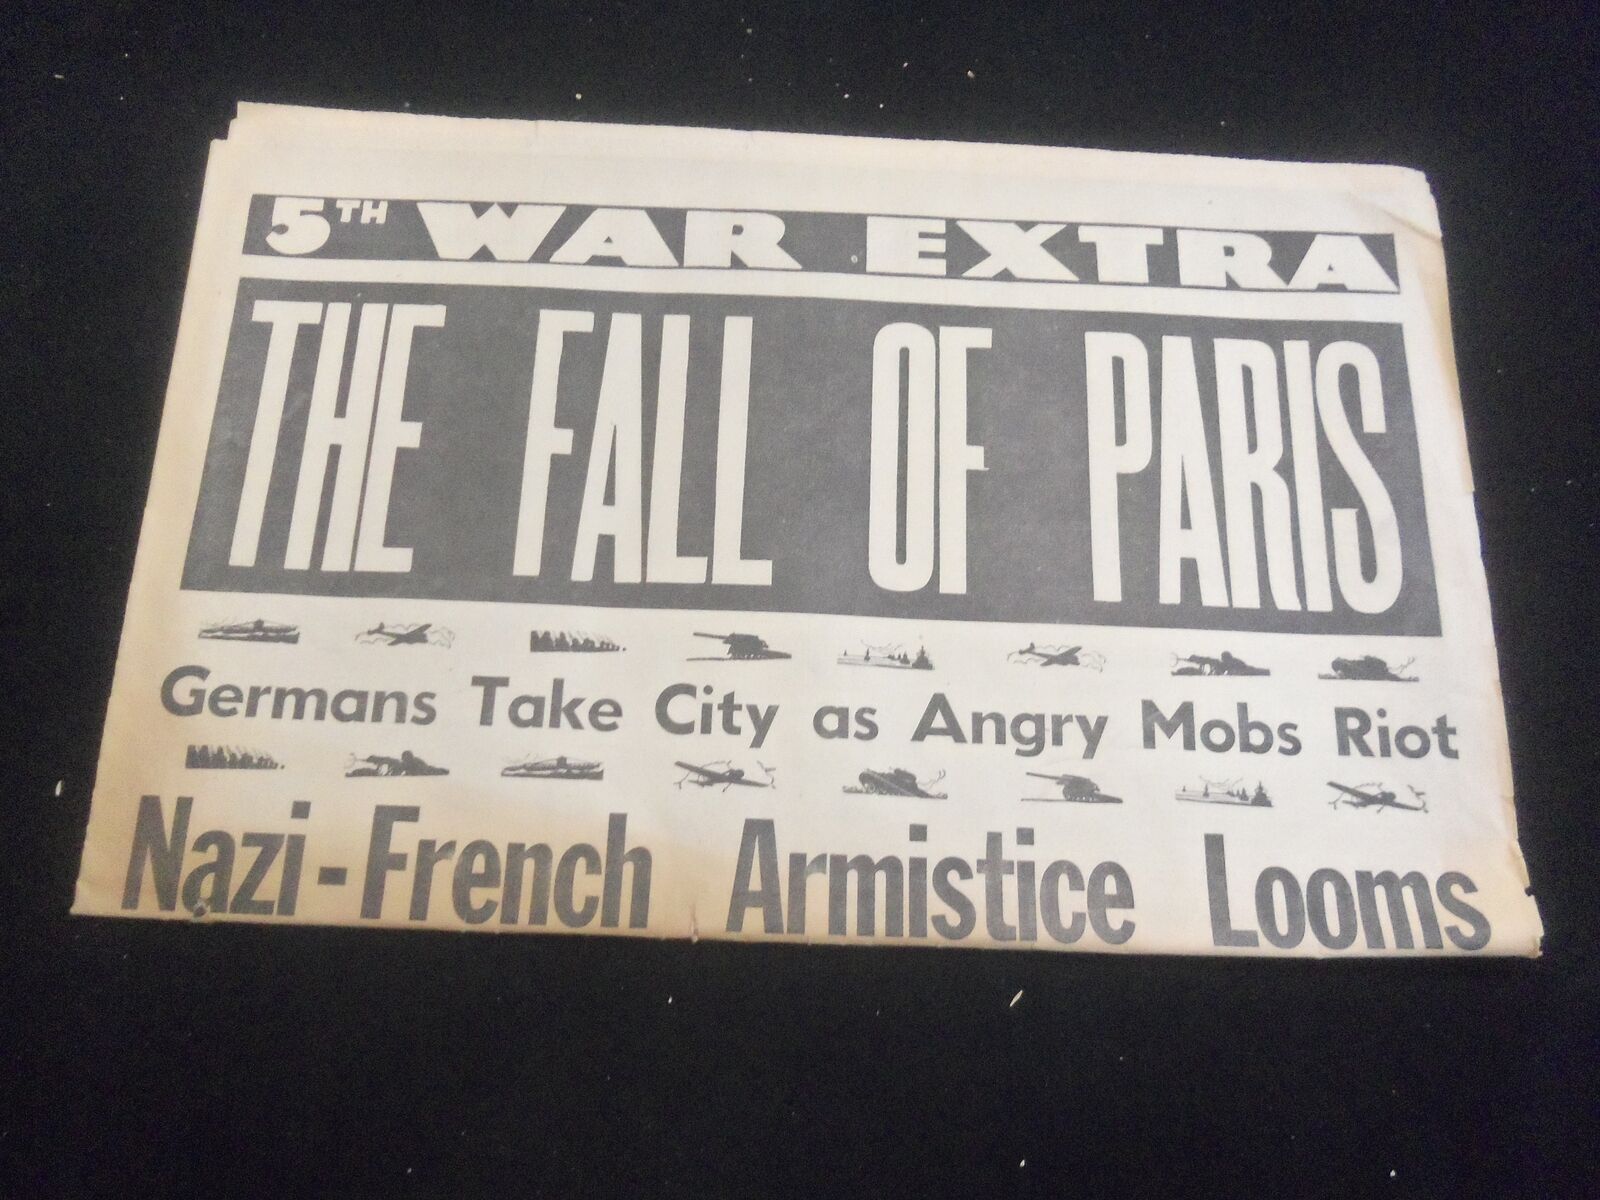 1940 JUNE 14 L. A. EVENING HERALD EXPRESS NEWSPAPER - THE FALL OF PARIS- NP 5734